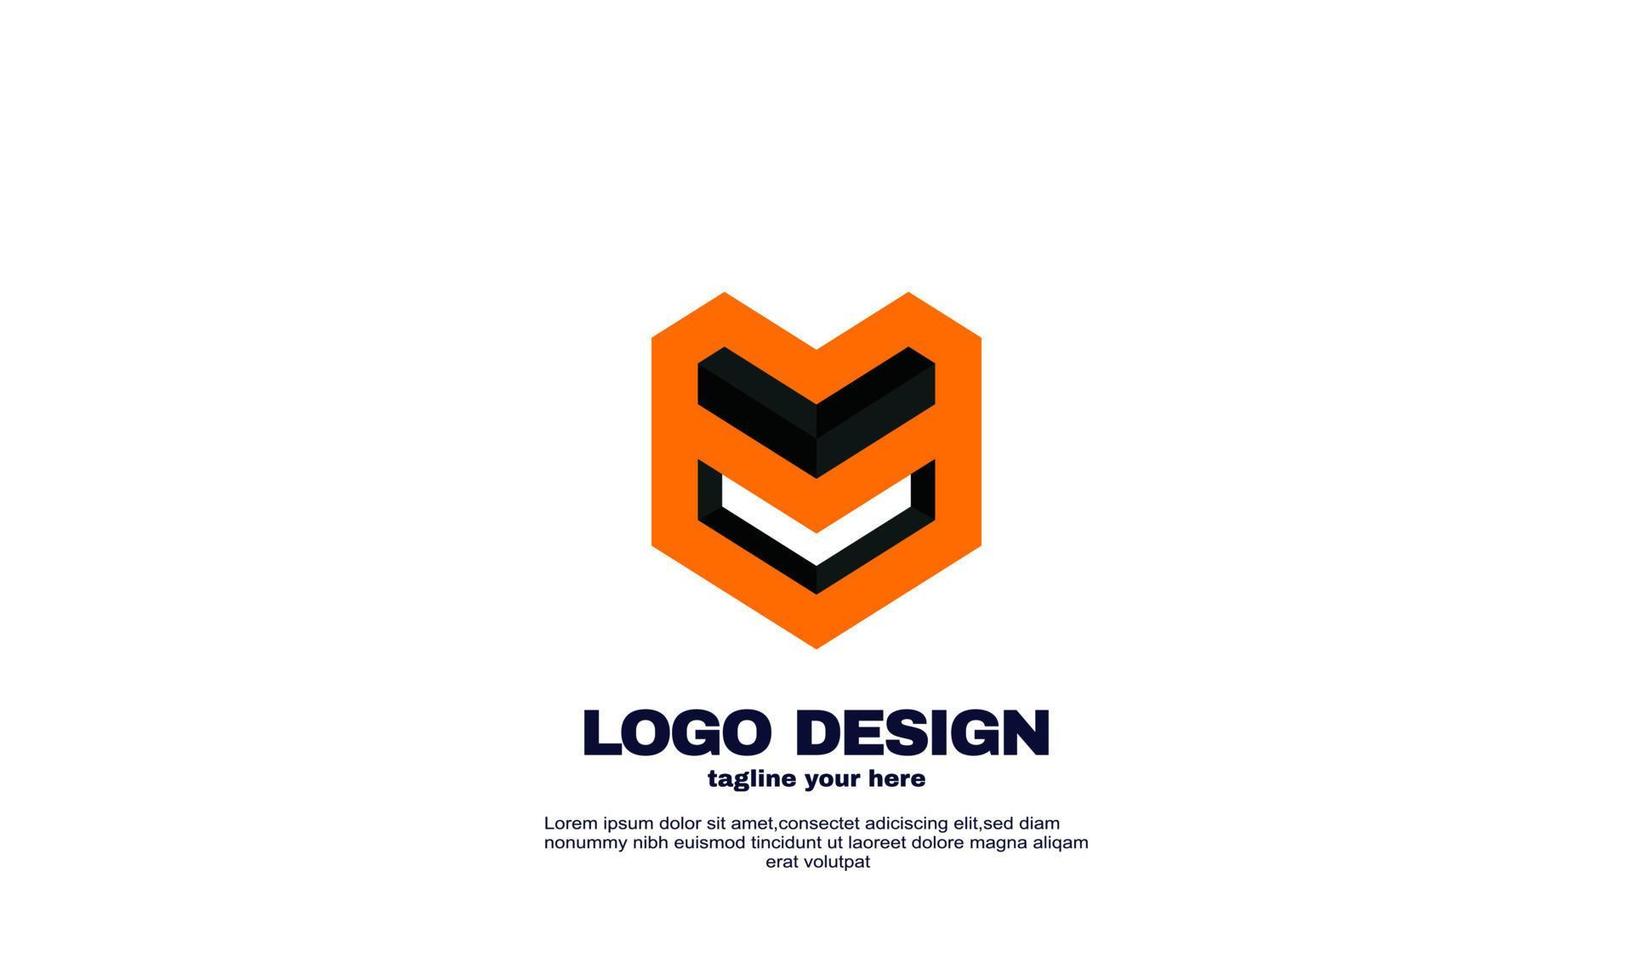 stock resumen creativo corporativo empresa negocio simple idea hexágono diseño logotipo elemento marca identidad diseño plantilla colorido vector